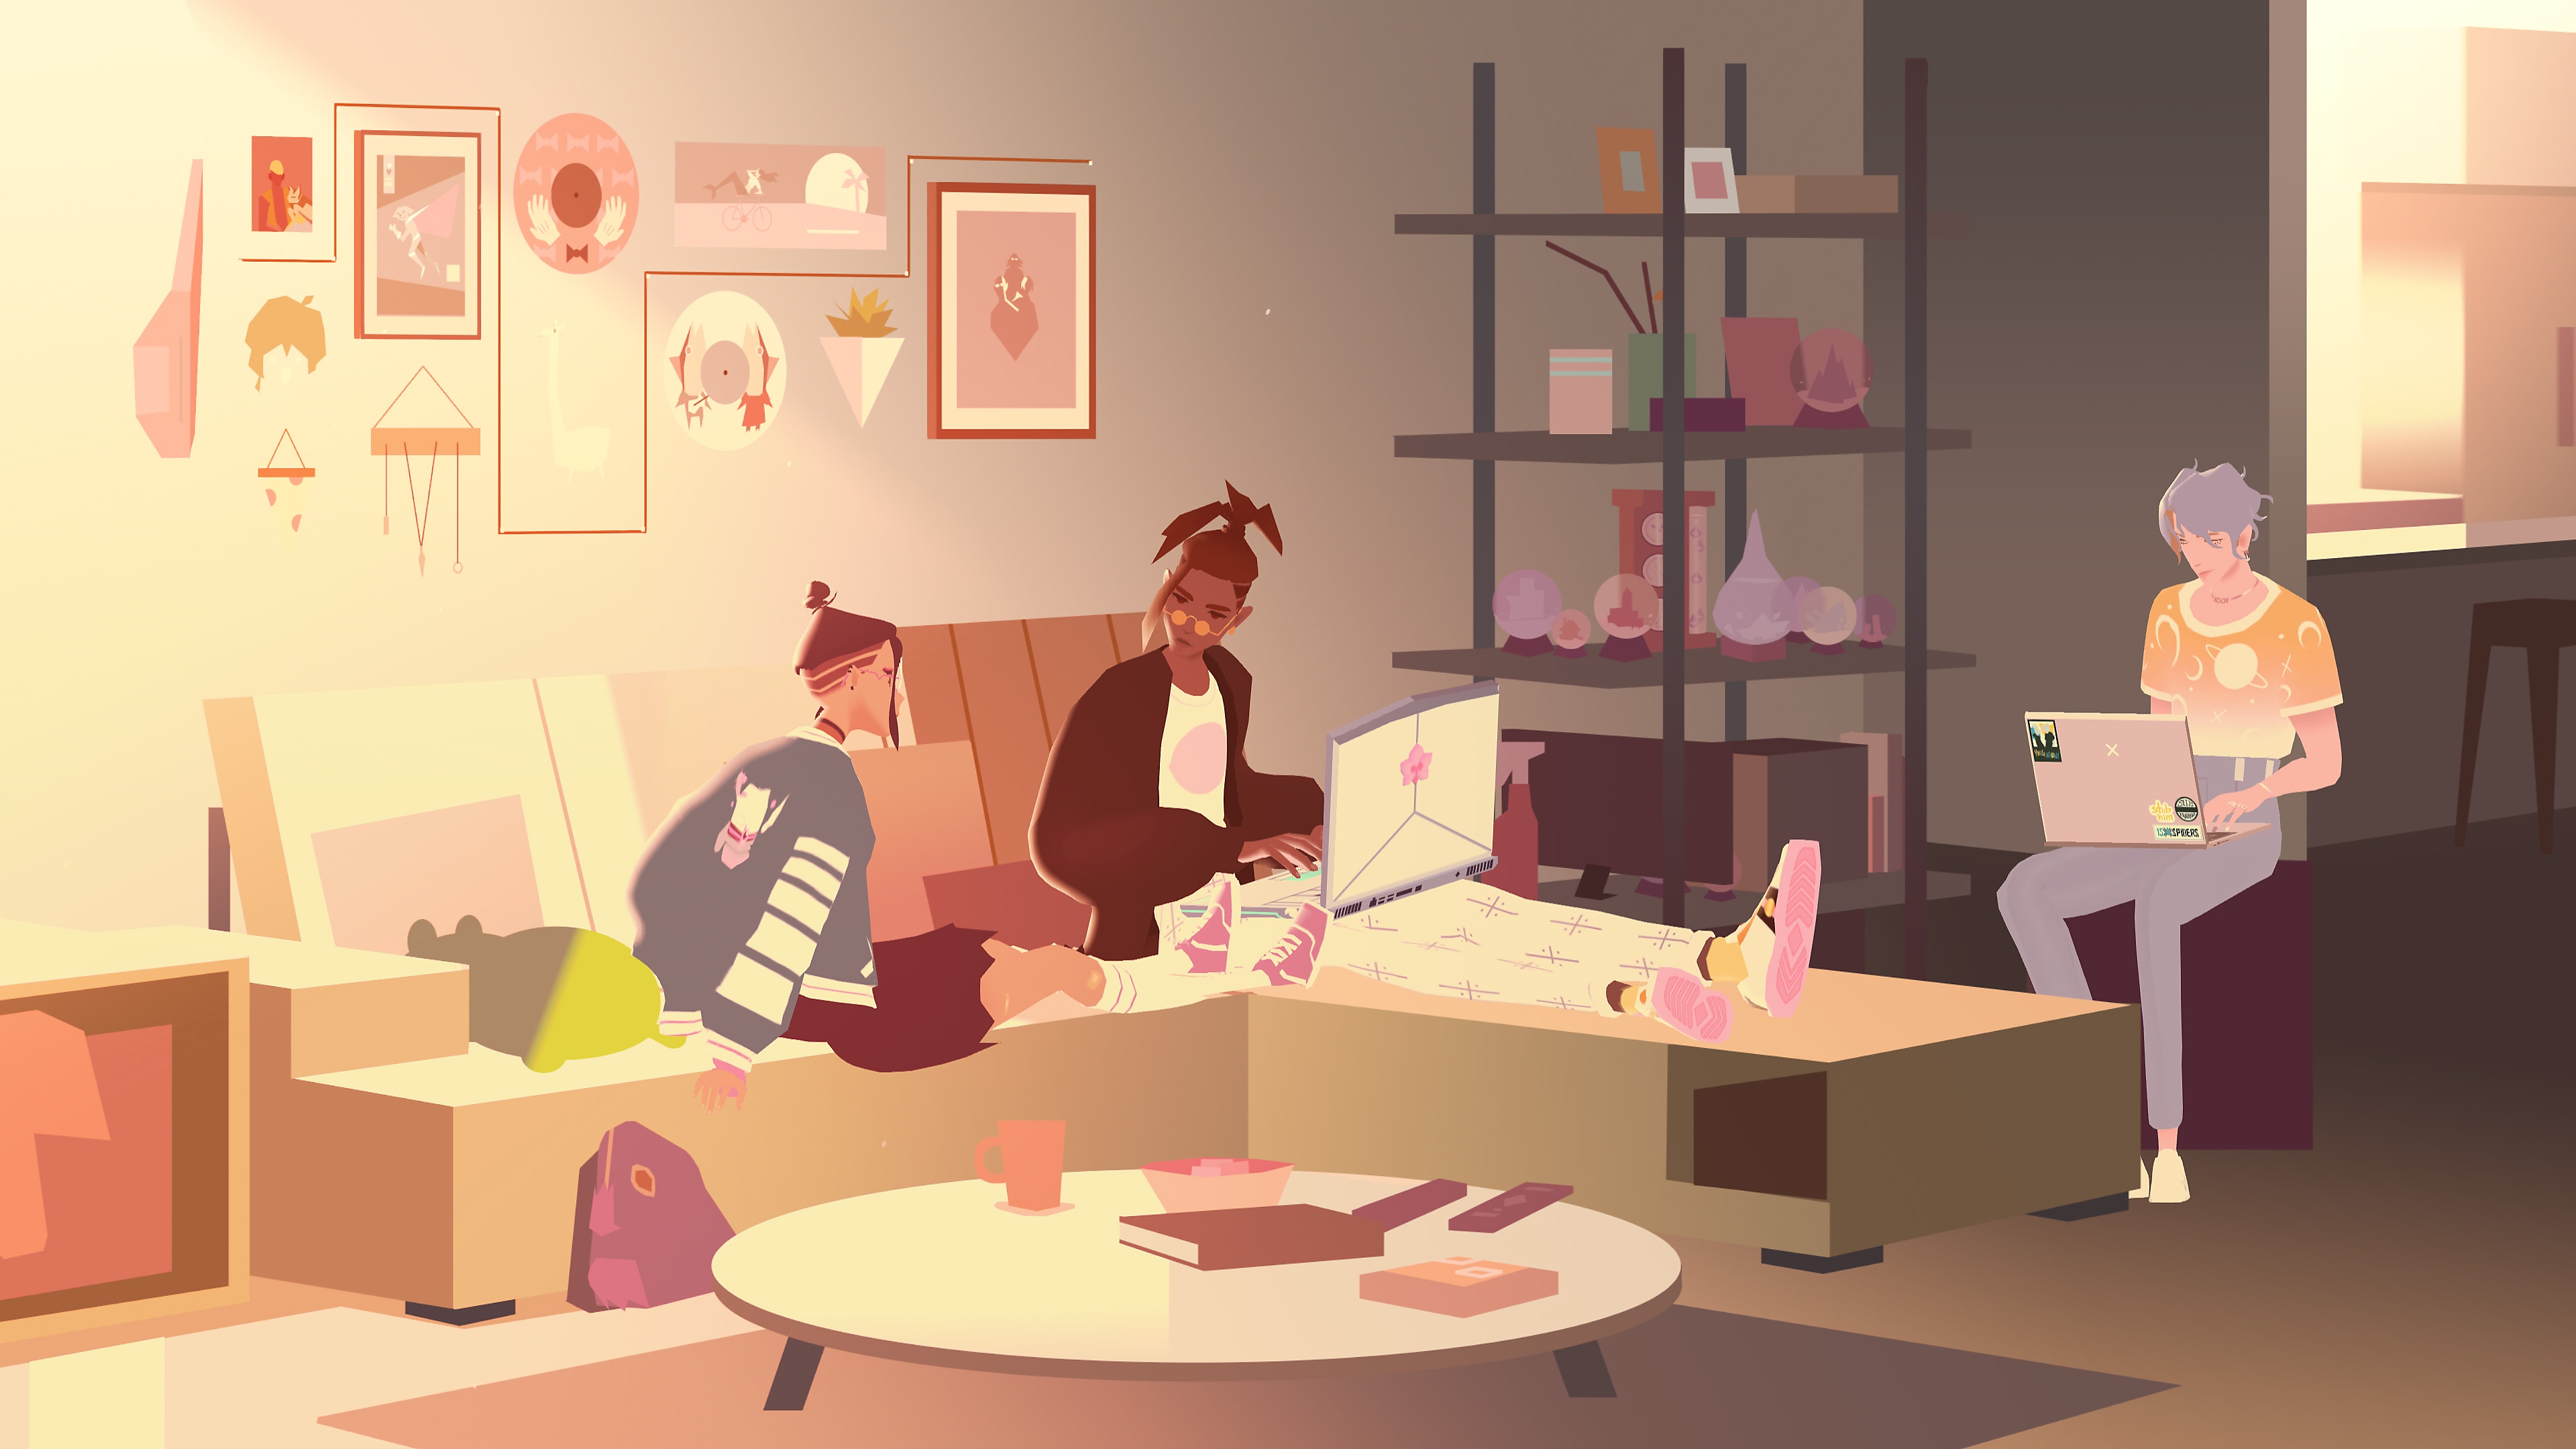 We Are OFK  – снимок экрана с изображением трех персонажей в гостиной